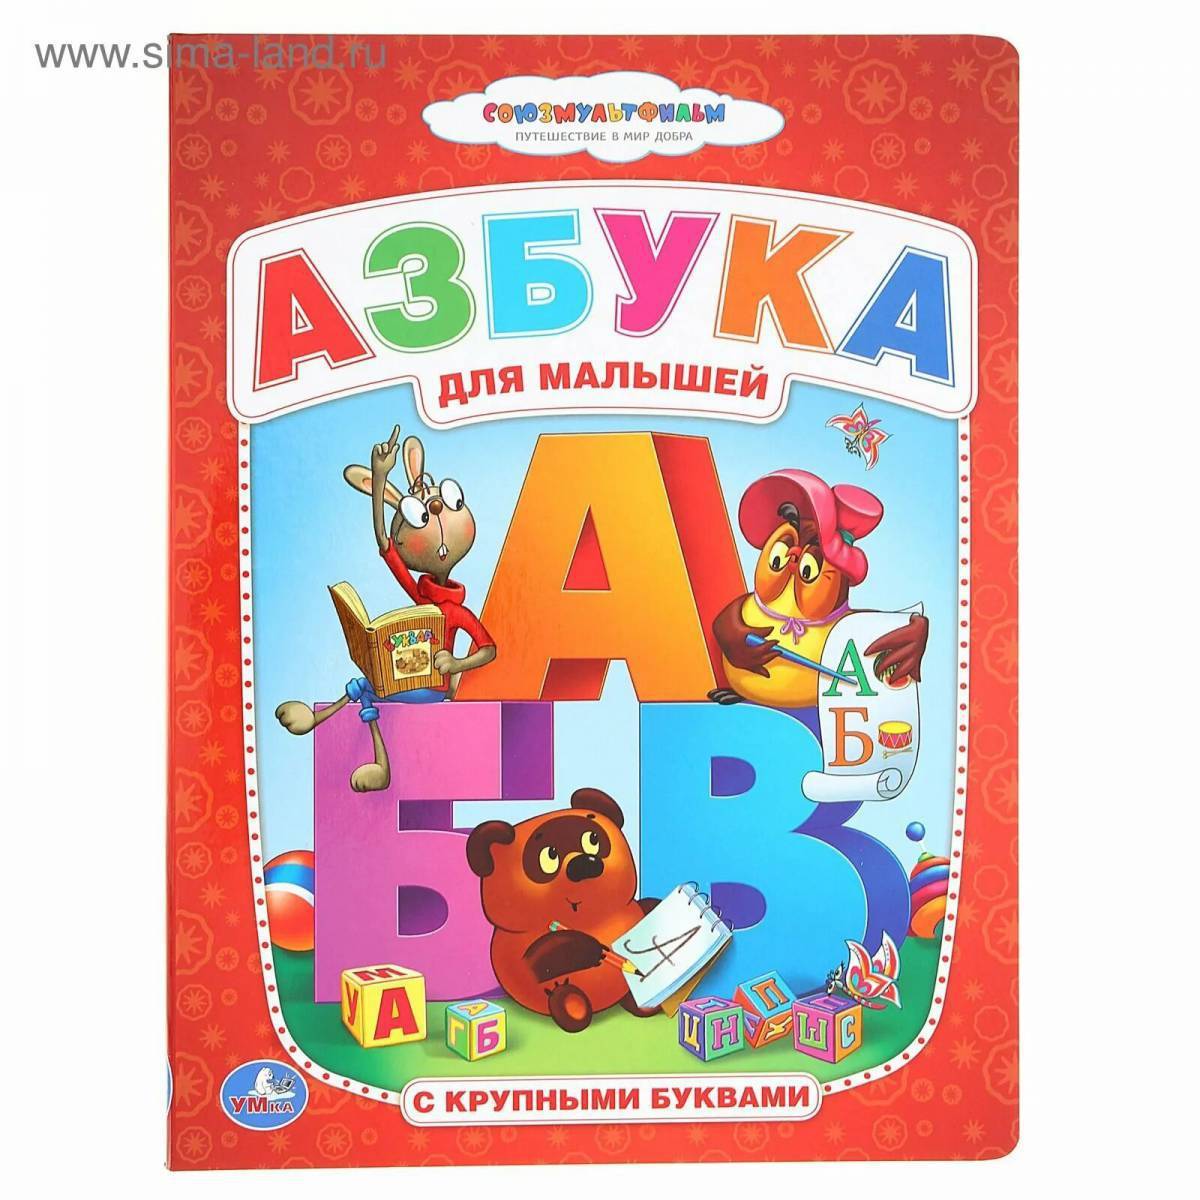 Азбука 1604. Книжка "Азбука". Азбука для малышей книга. Азбука (обложка). Алфавит книга для детей.